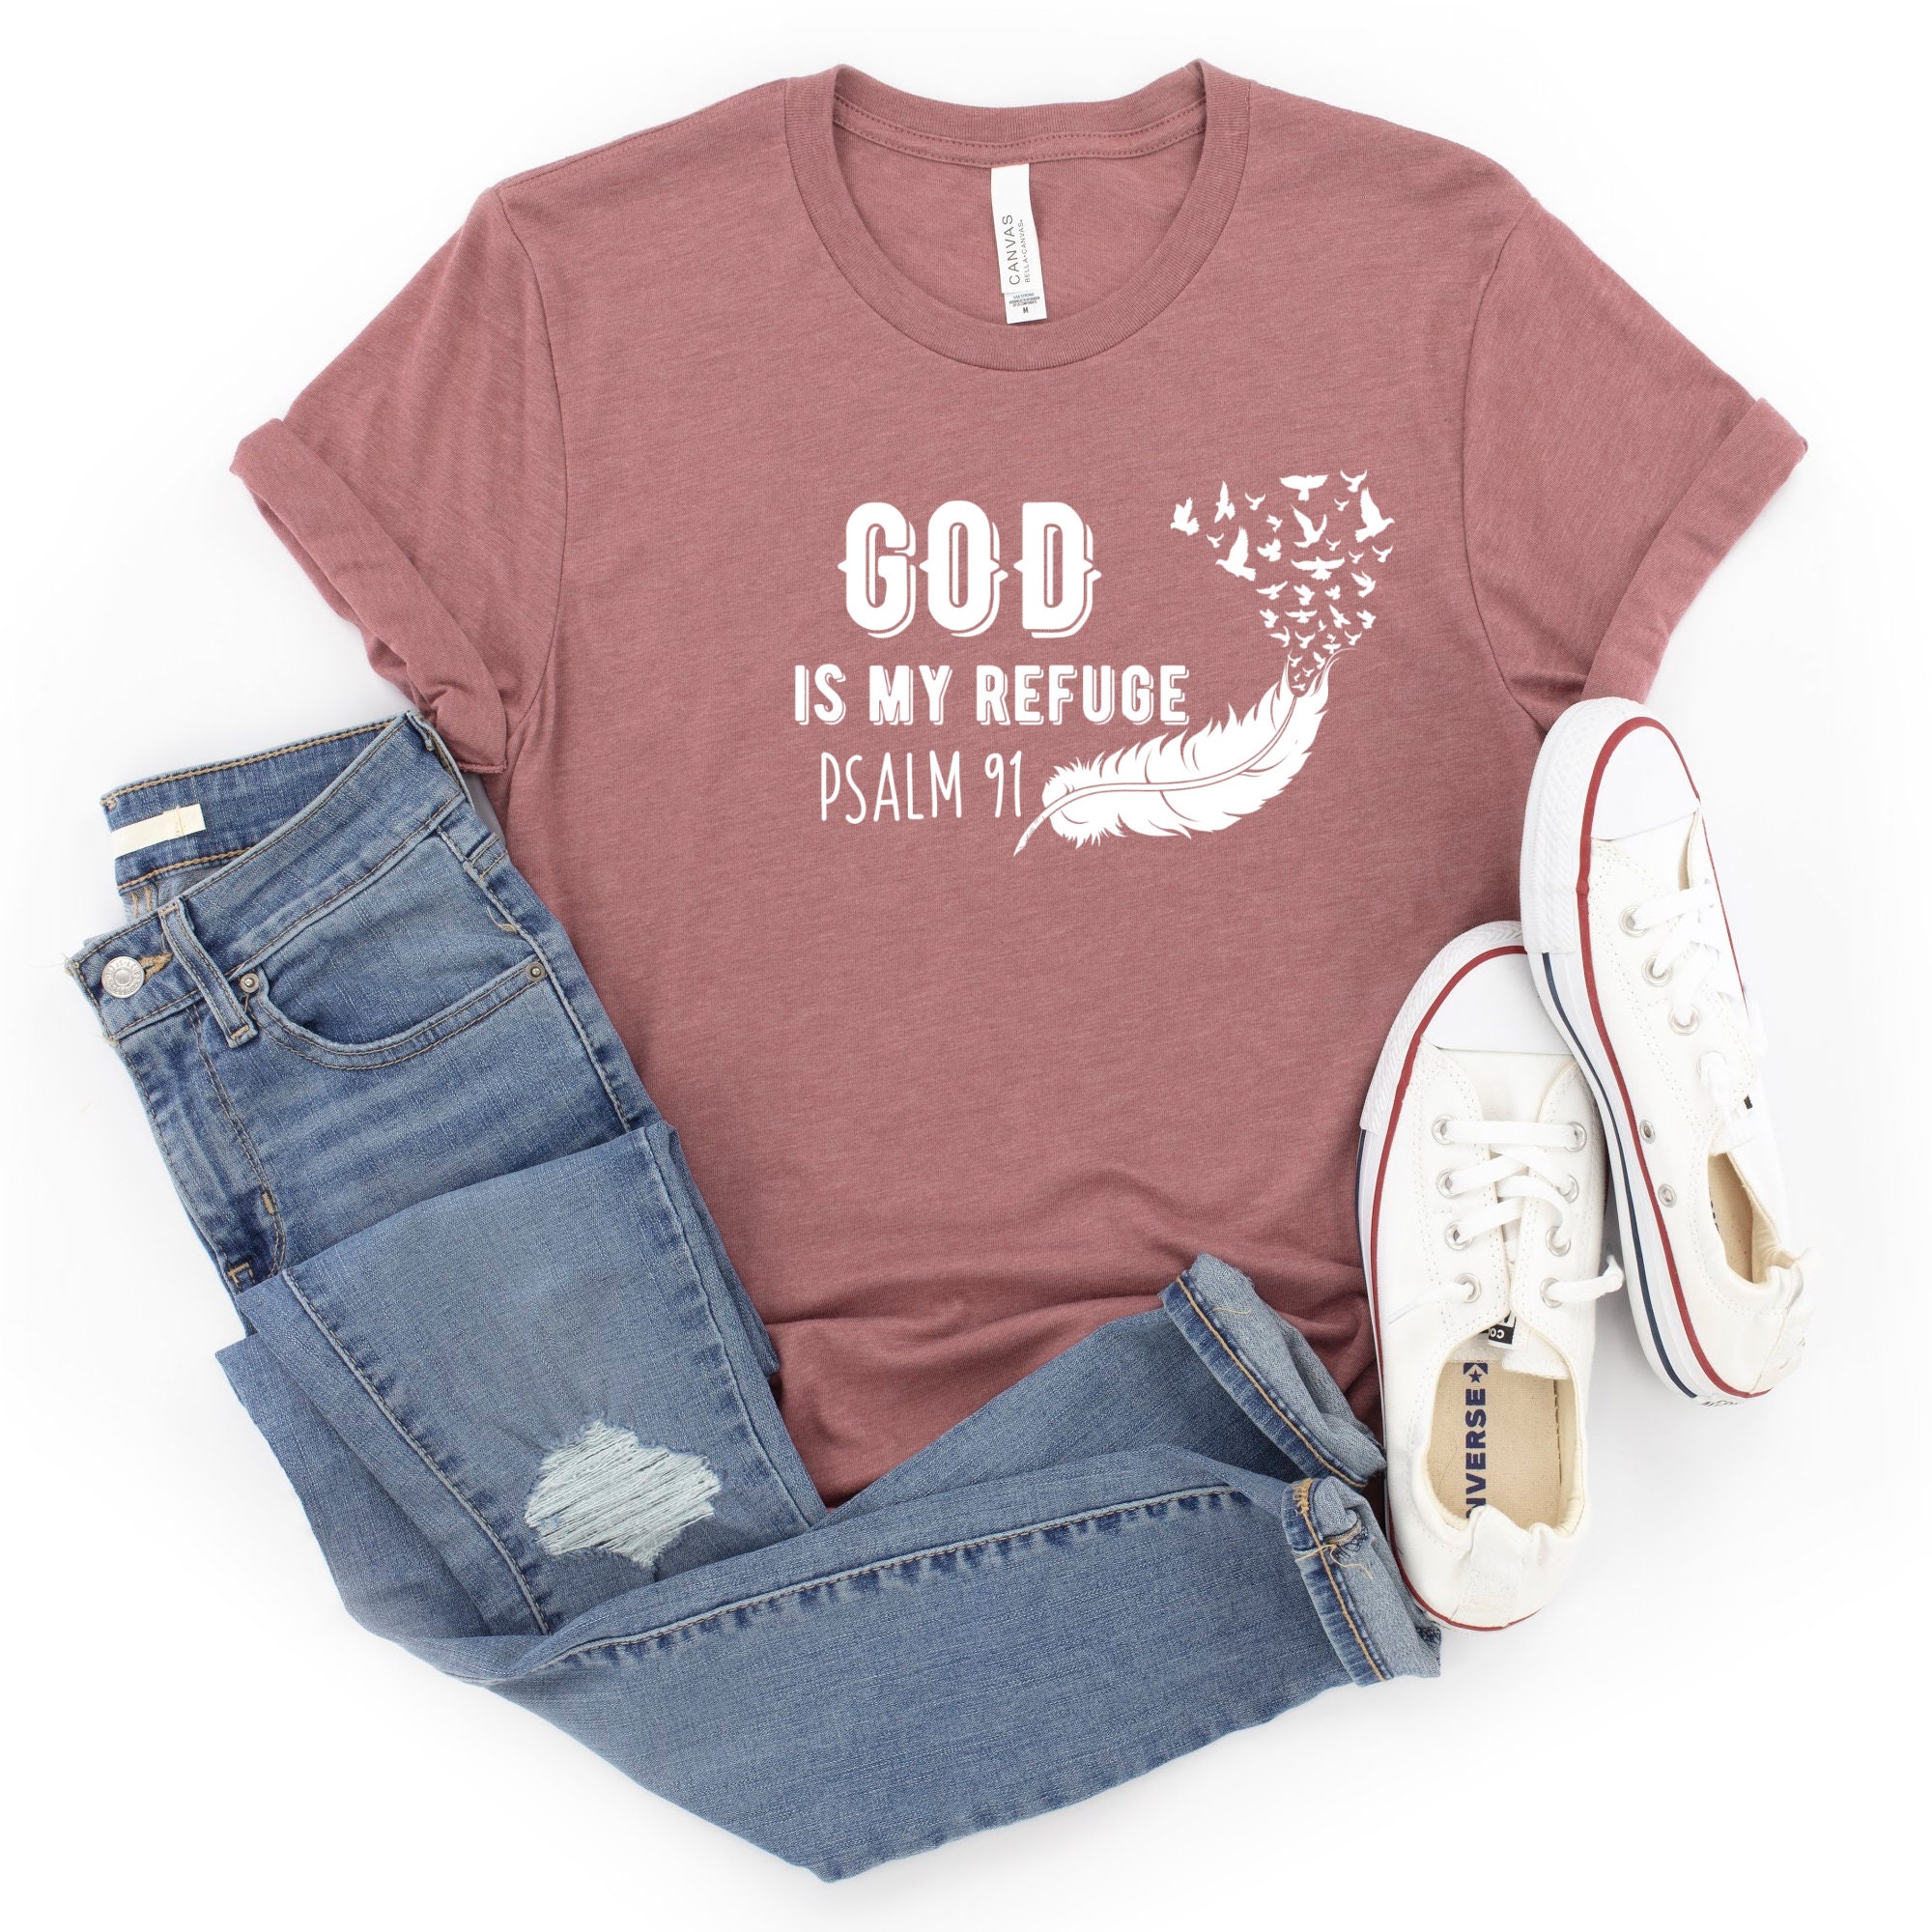 Psalm 91 tshirt christian gift bible tshirt | Etsy